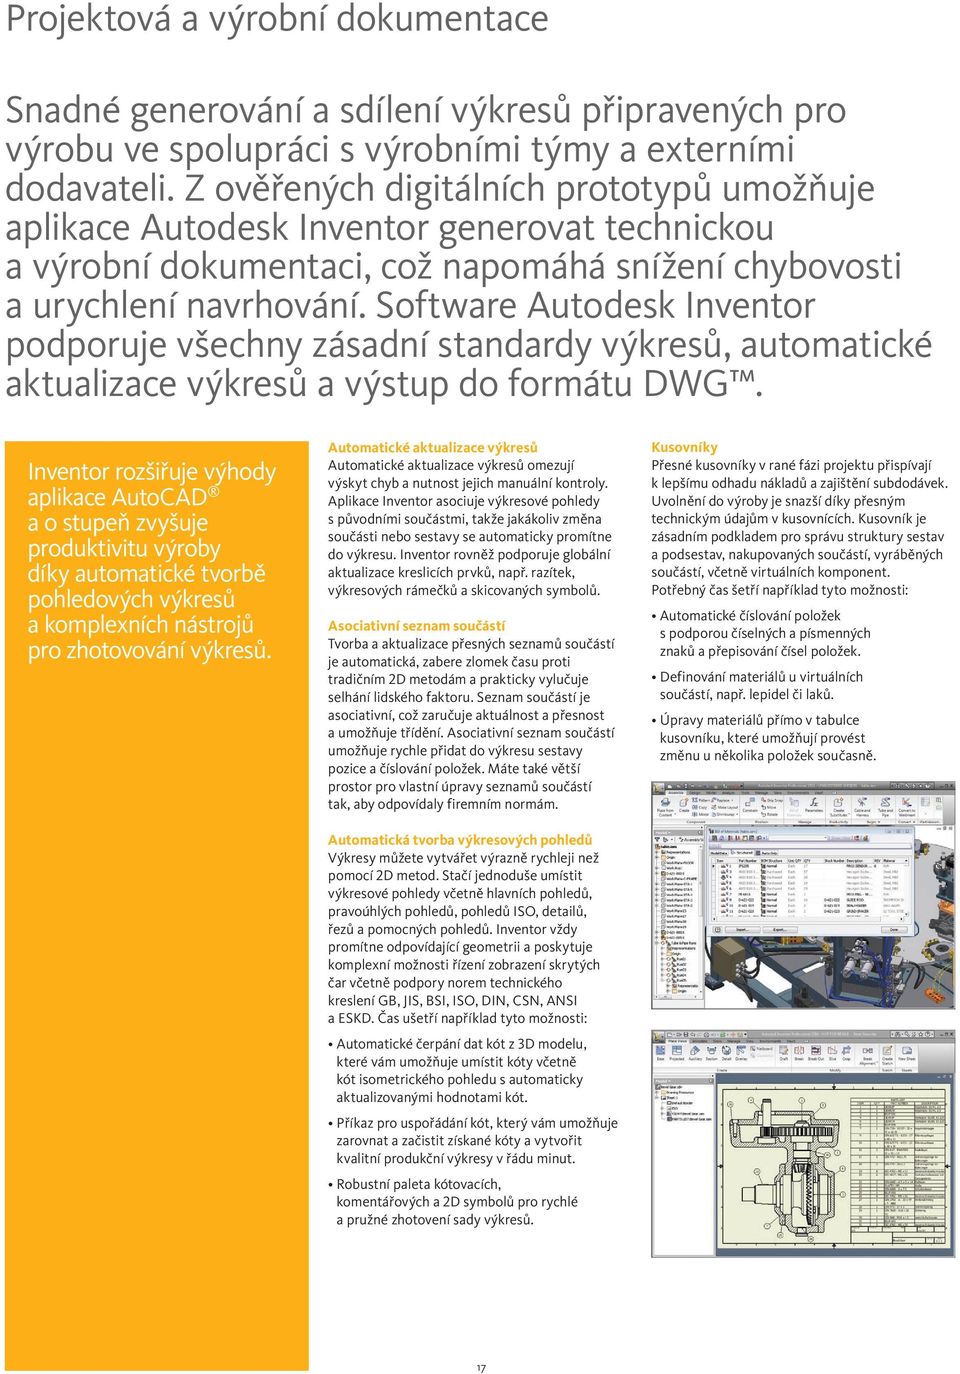 Software Autodesk Inventor podporuje všechny zásadní standardy výkresů, automatické aktualizace výkresů a výstup do formátu DWG.